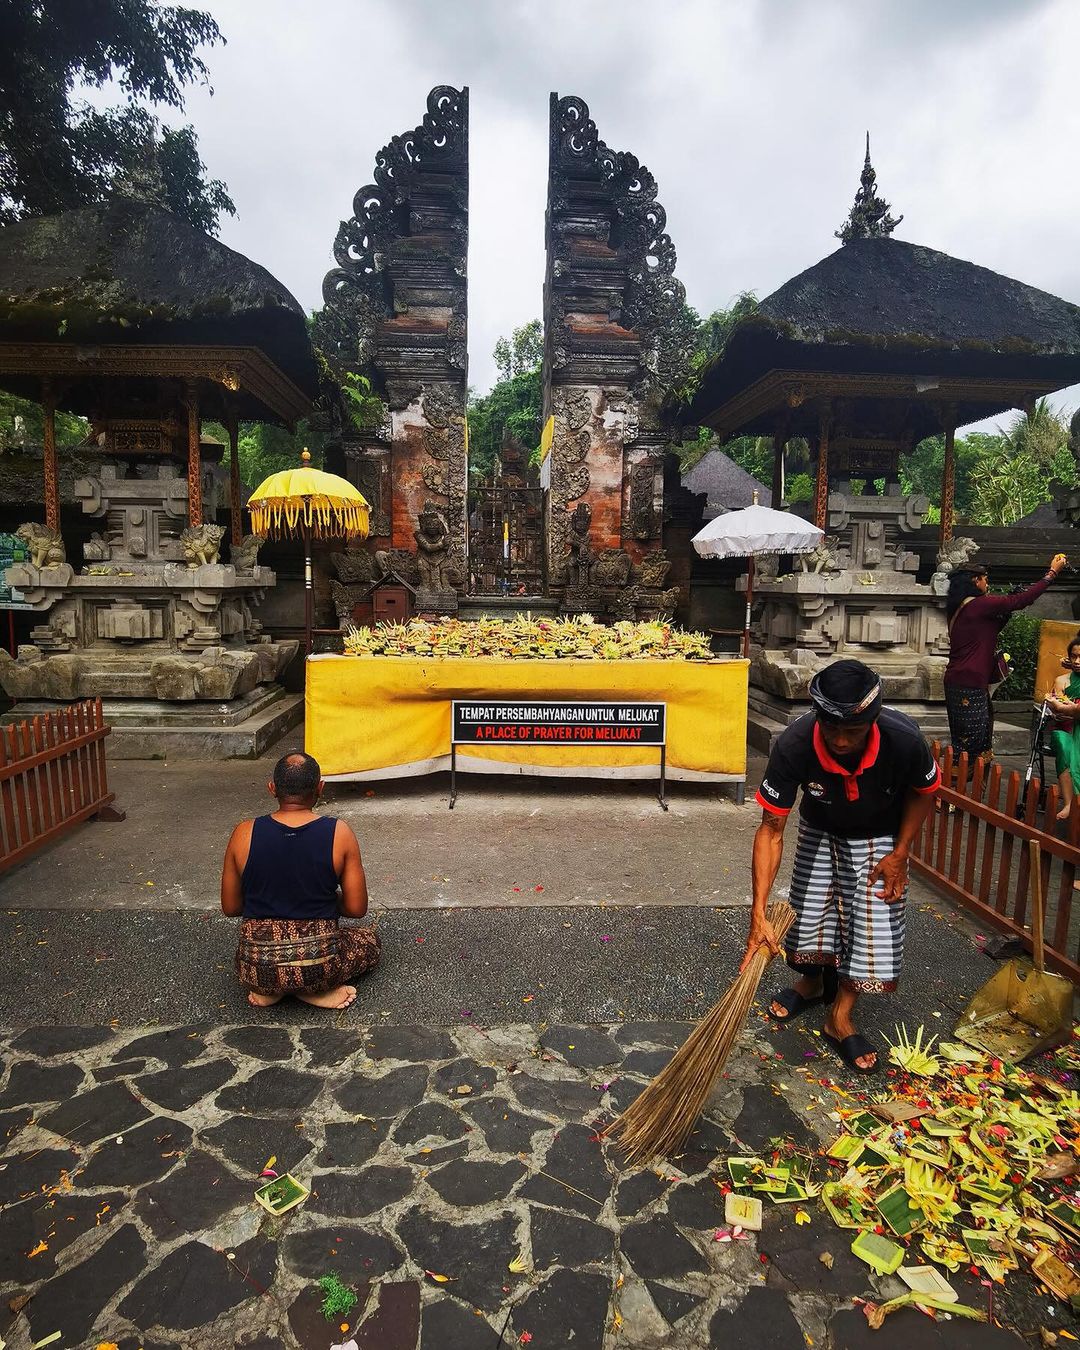 Kuba Wojewódzki pokazał zdjęcia z Bali (fot. Instagram)